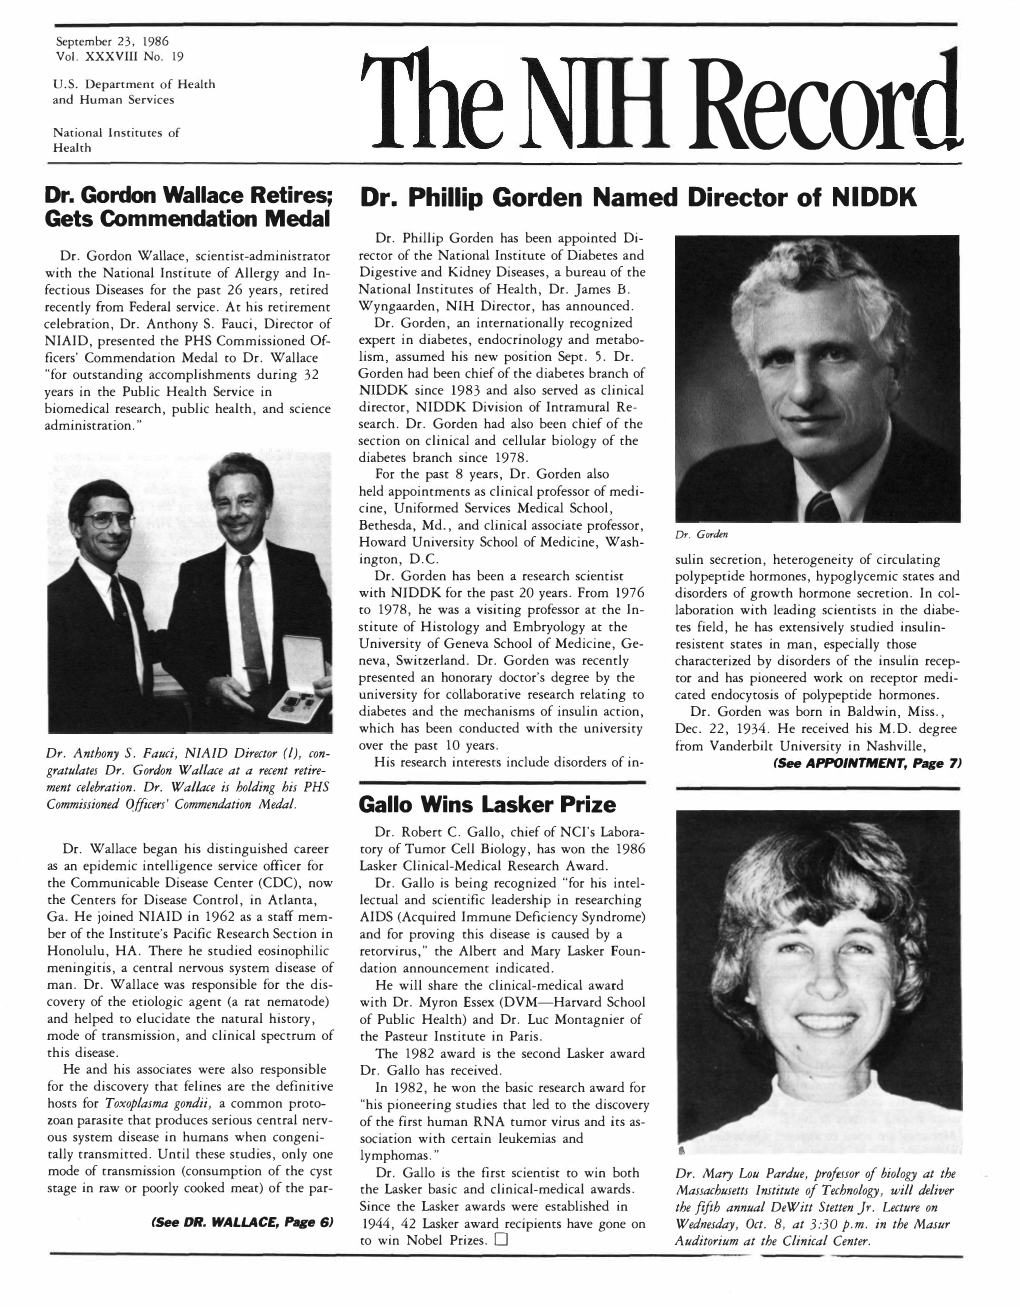 September 23, 1986, NIH Record, Vol. XXXVIII, No. 19